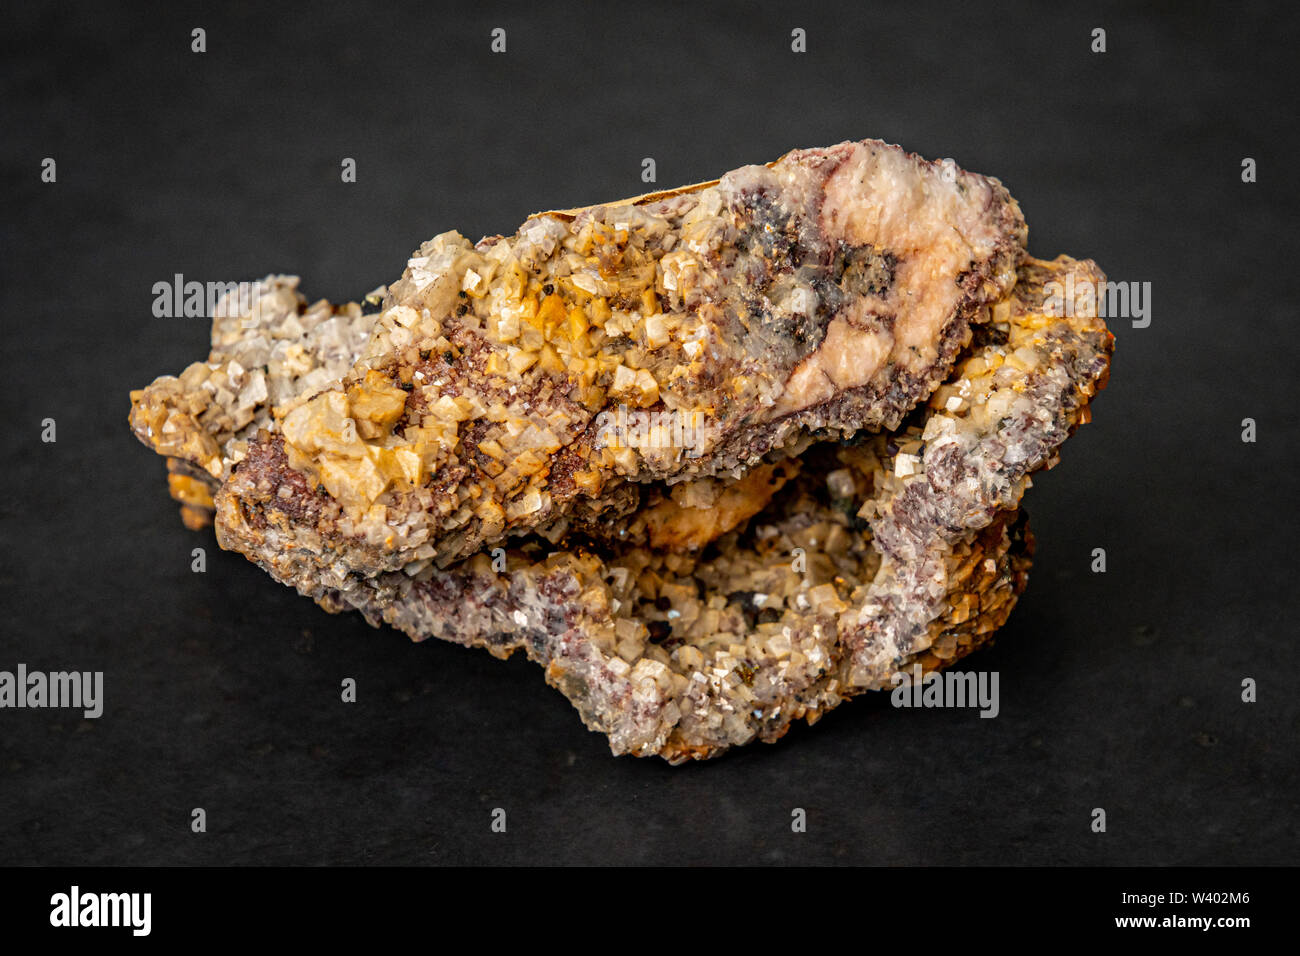 La pyrite chalcopyrite minéral contenant de grandes quantités de minerai de cuivre Banque D'Images